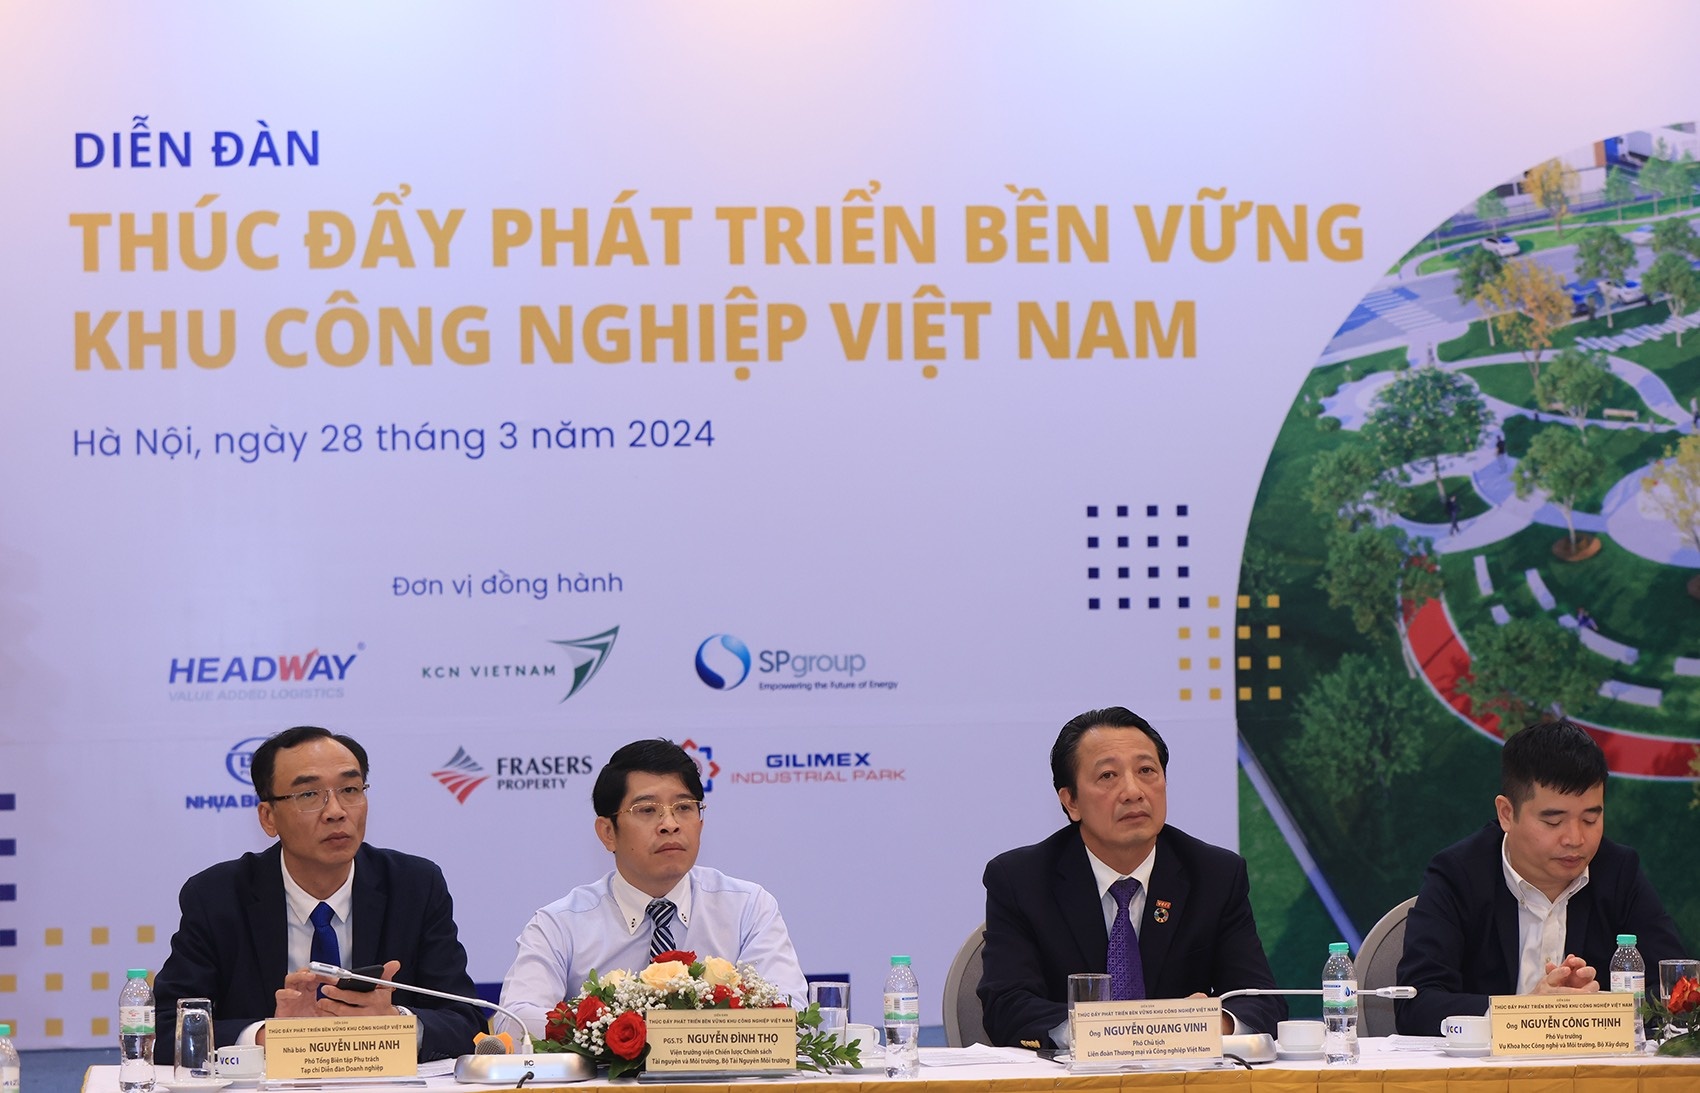 Quang cảnh Diễn đàn thúc đẩy phát triển bền vững khu công nghiệp Việt Nam.